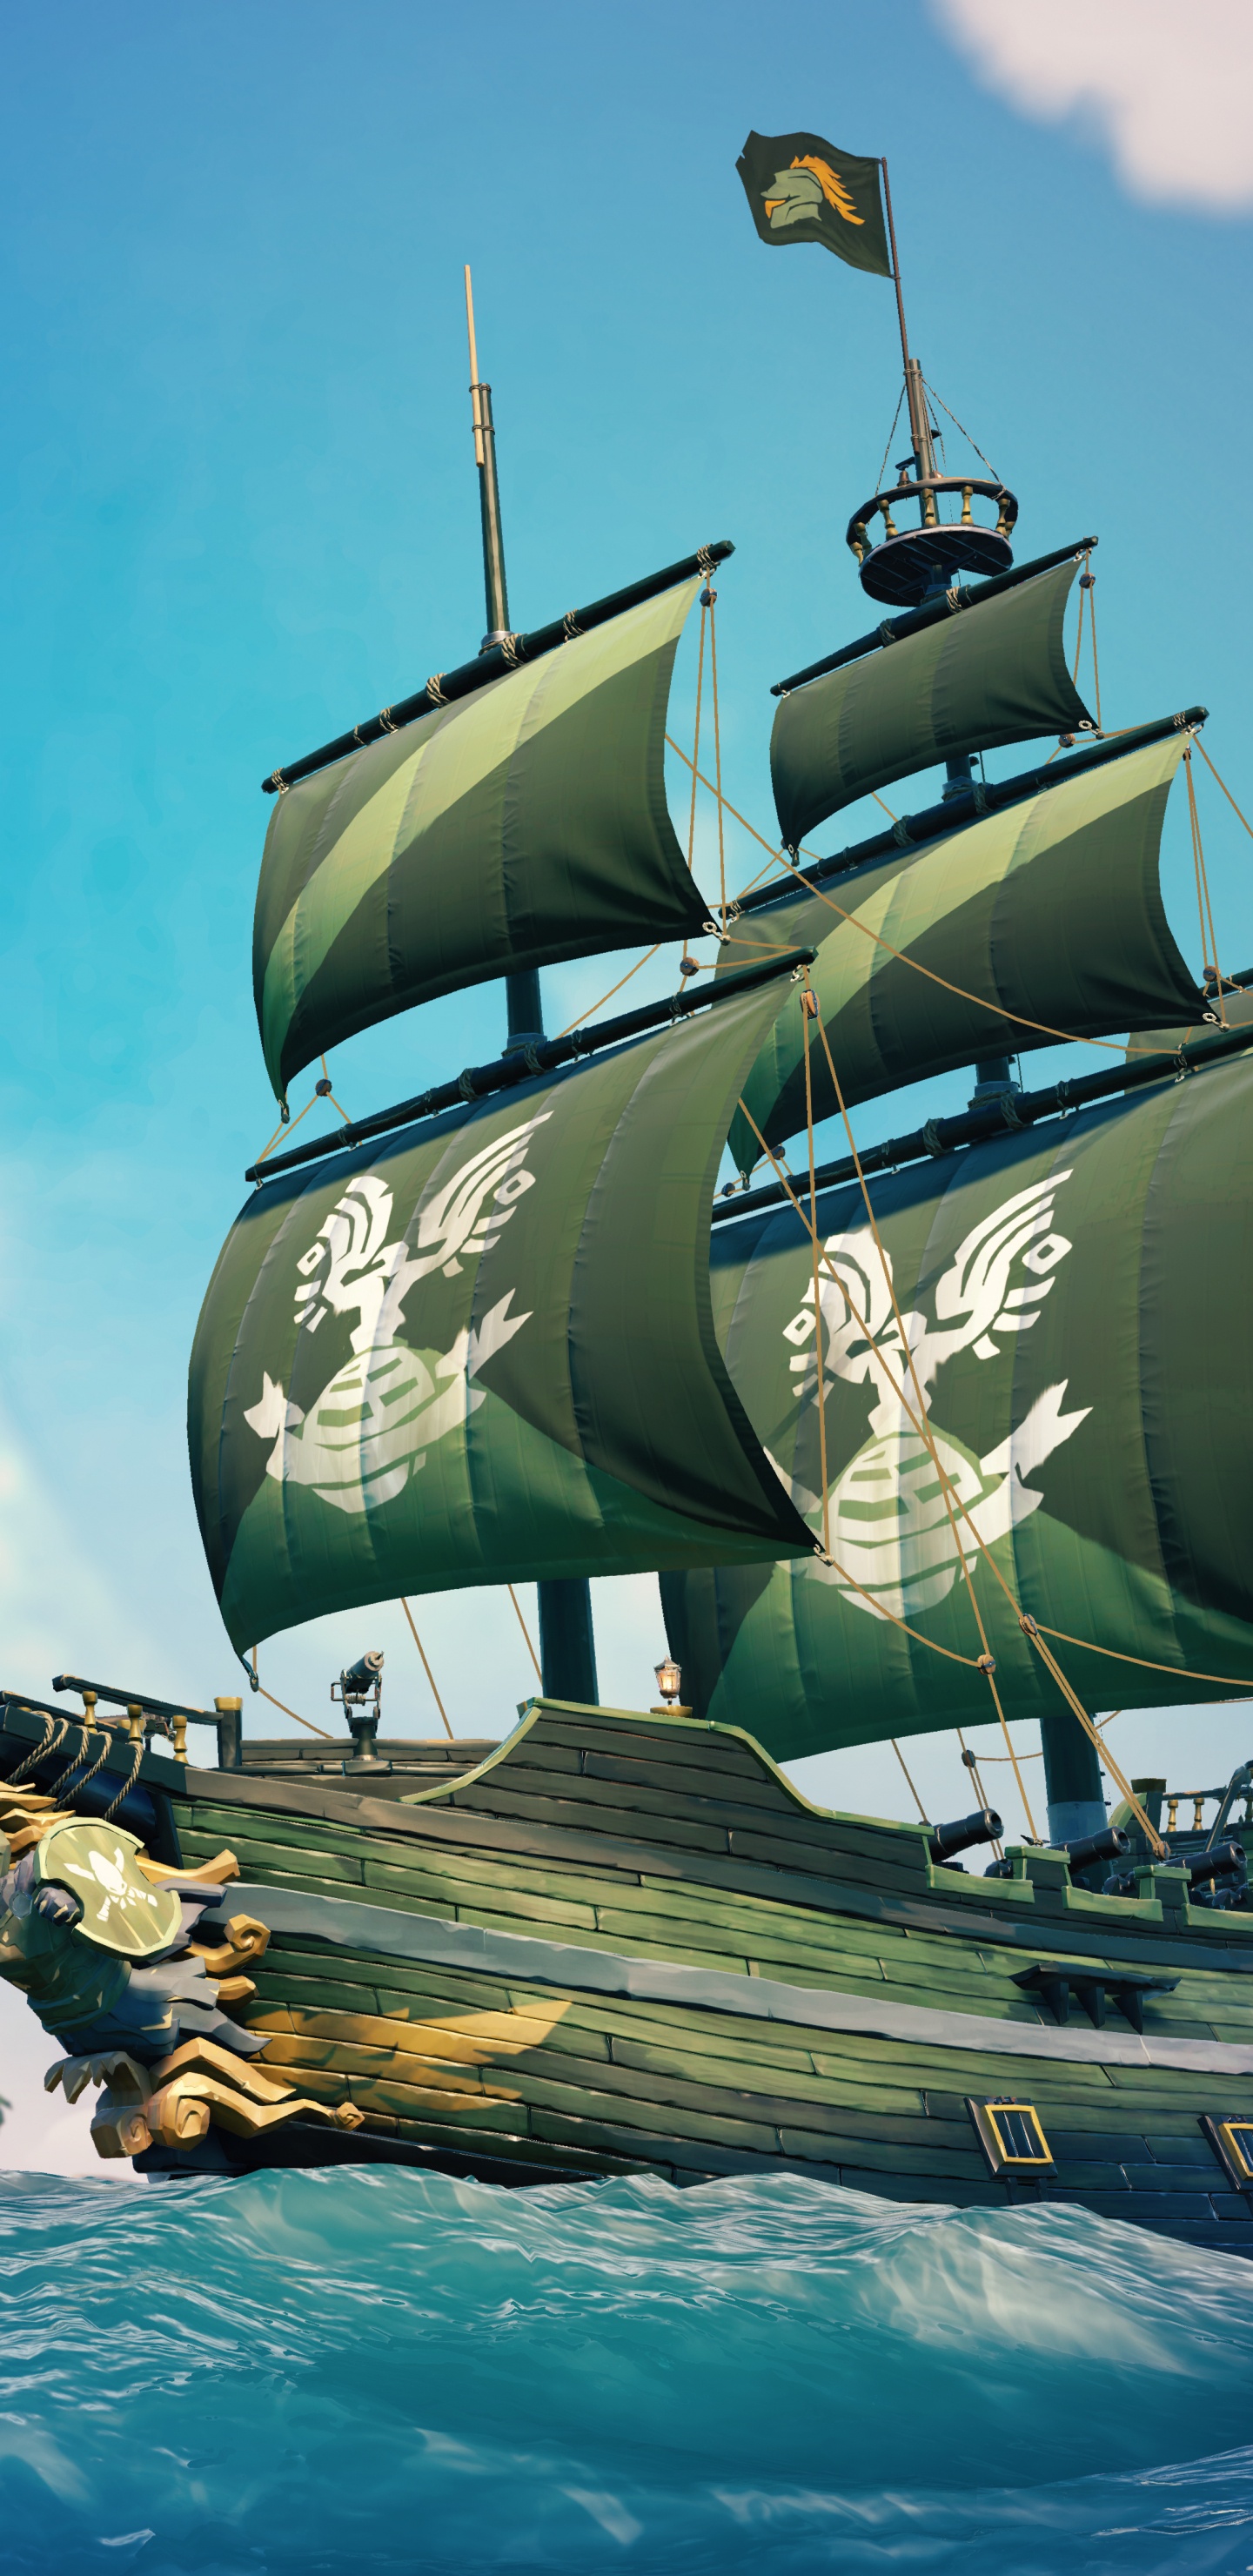 Xbox游戏室, 马尼拉大帆船, 船只, Fluyt, 旗舰 壁纸 1440x2960 允许